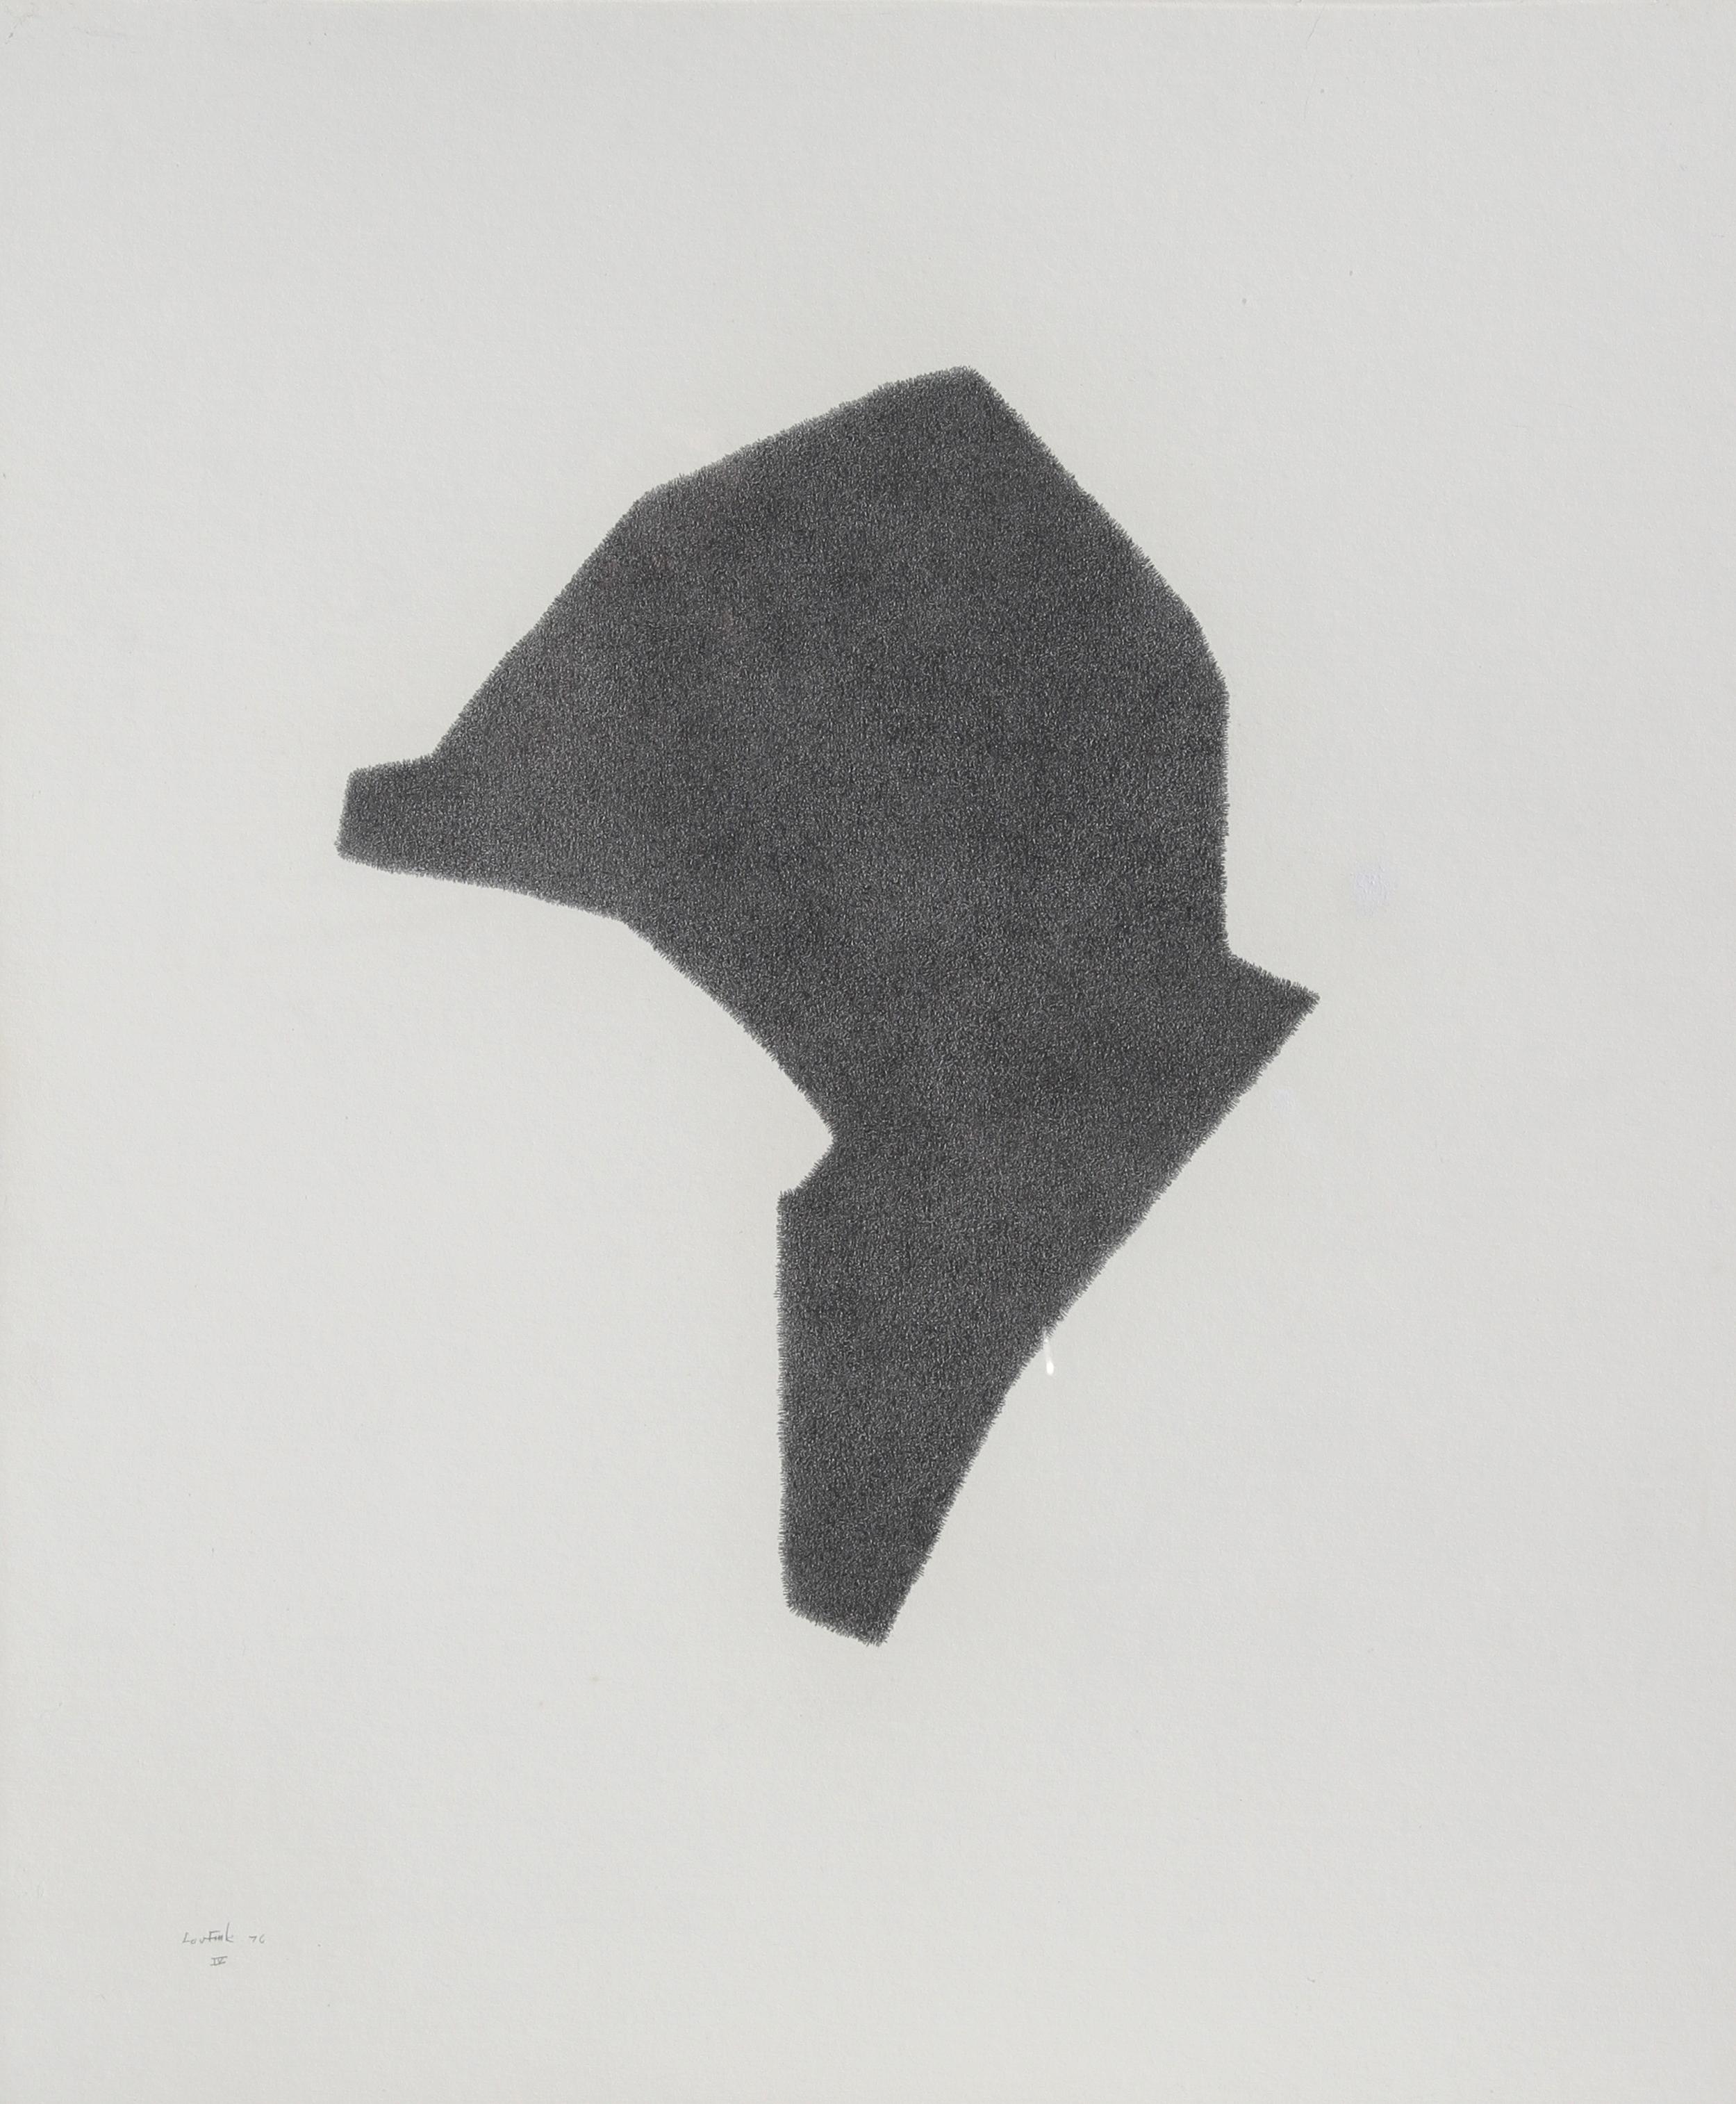 Artiste : Lou Fink
Titre : Casque n° 4
Année : 1976
Médium : Crayon sur papier, signé et daté à gauche.
Taille : 20 in. x 24 in. (50,8 cm x 60,96 cm)